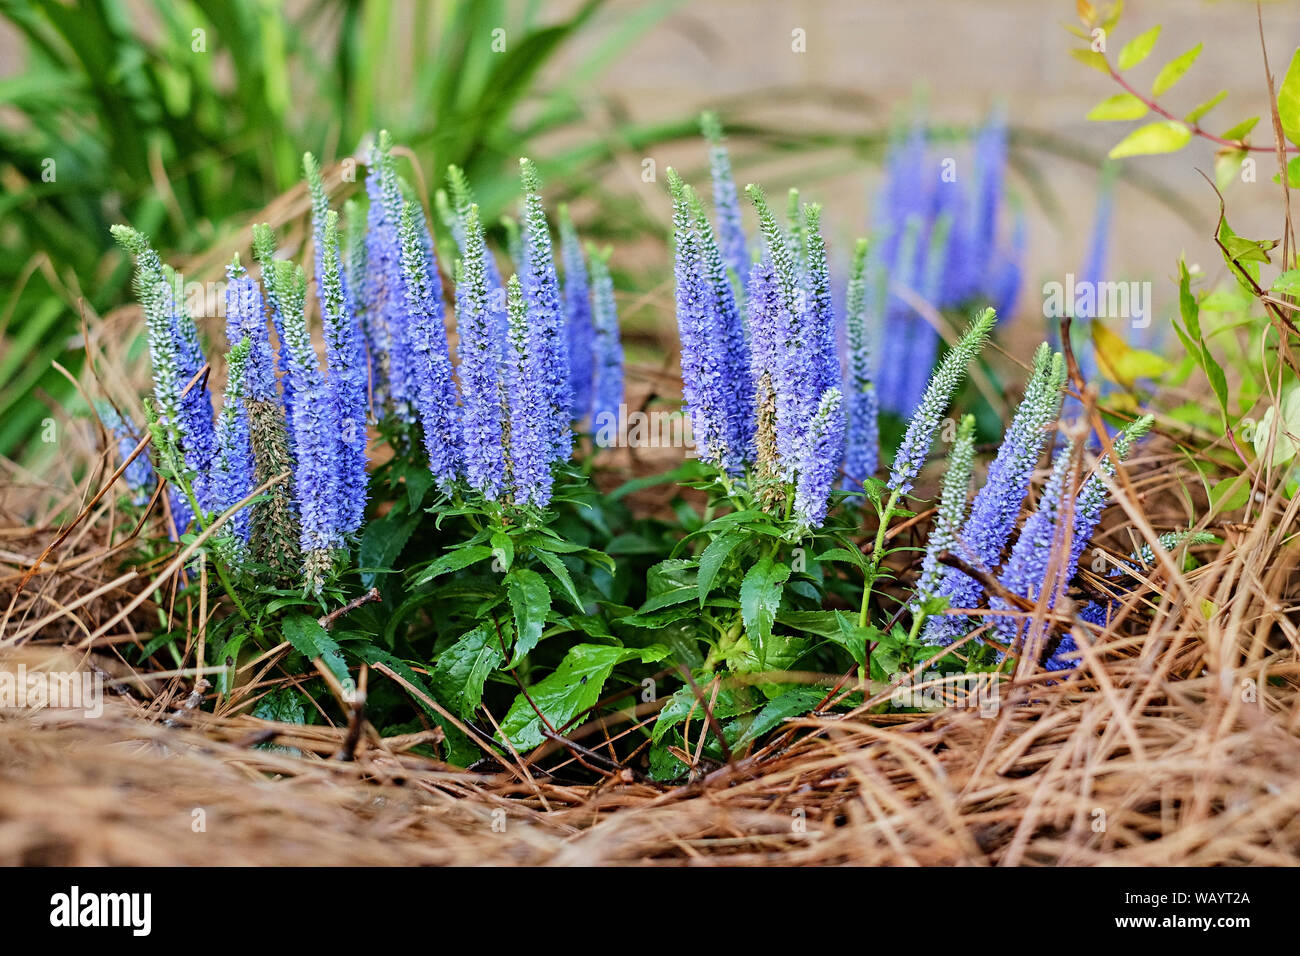 16 Kerzen, 16 Kerzen, oder, Clethra alnifolia (clethraceae), mit blauen oder violetten Blüten, Blüten, Blüten oder in einem Heim Garten gezeigt. Stockfoto